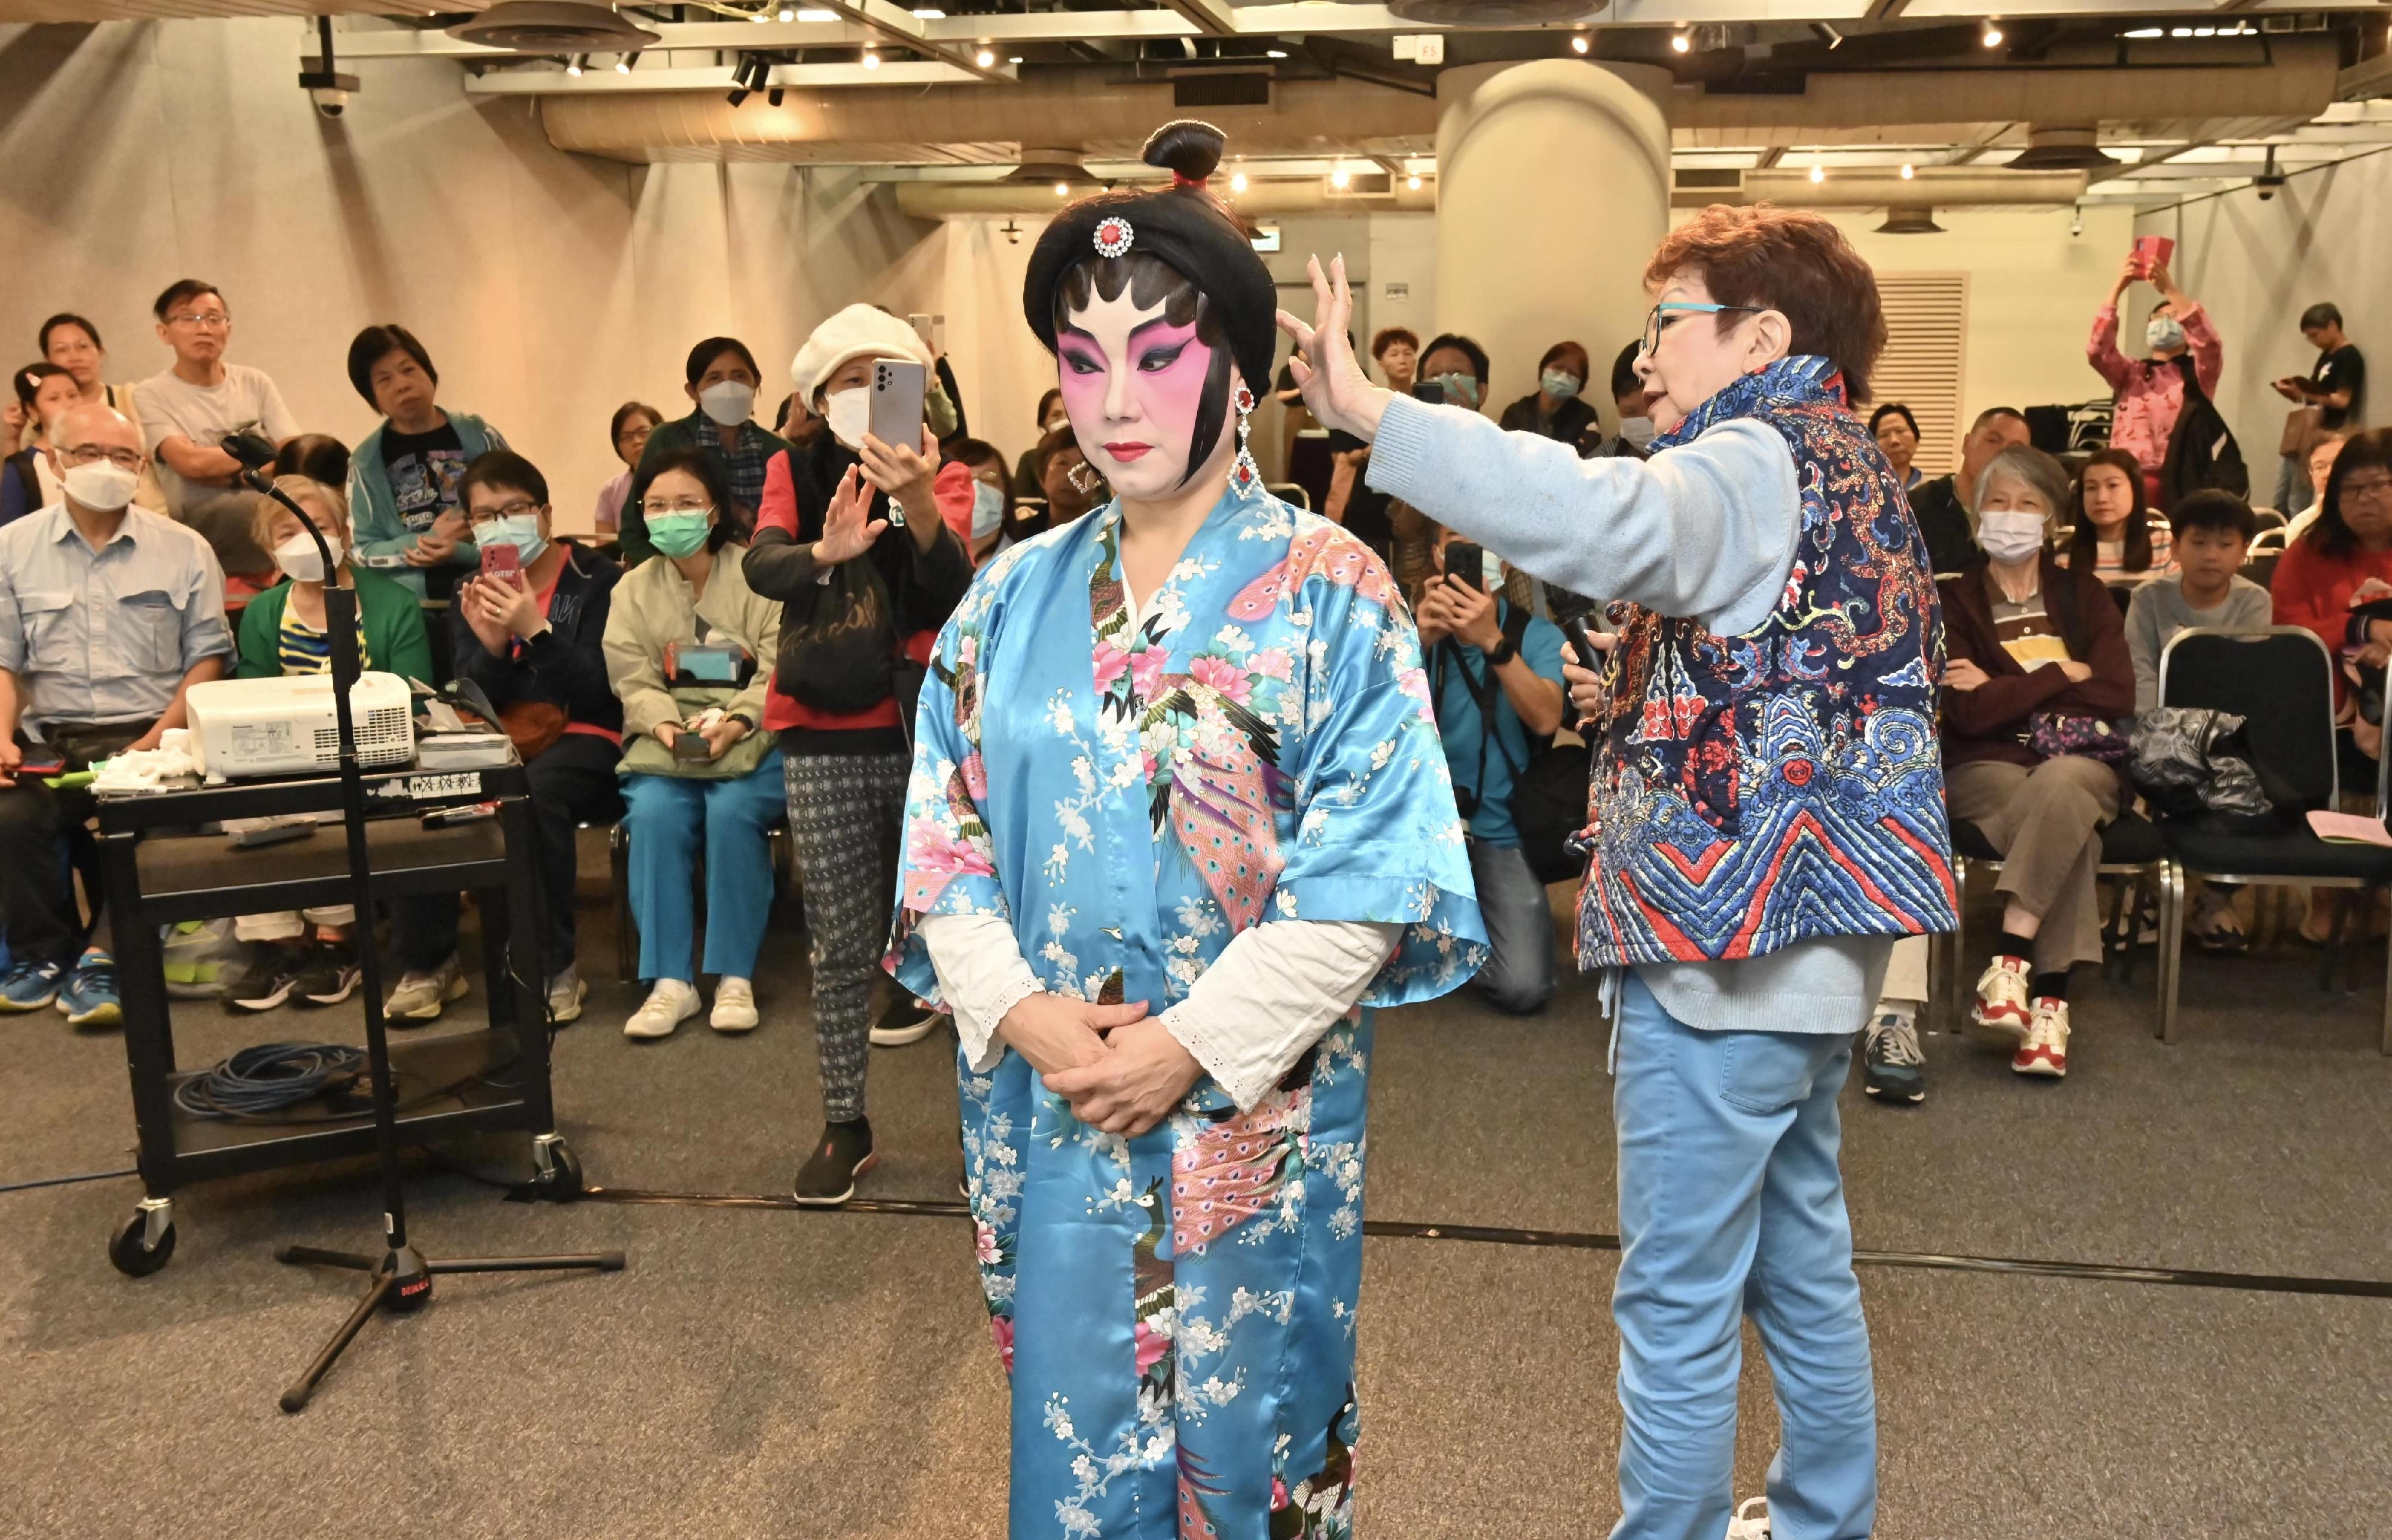 粵劇演員向觀眾示範戲服穿戴。